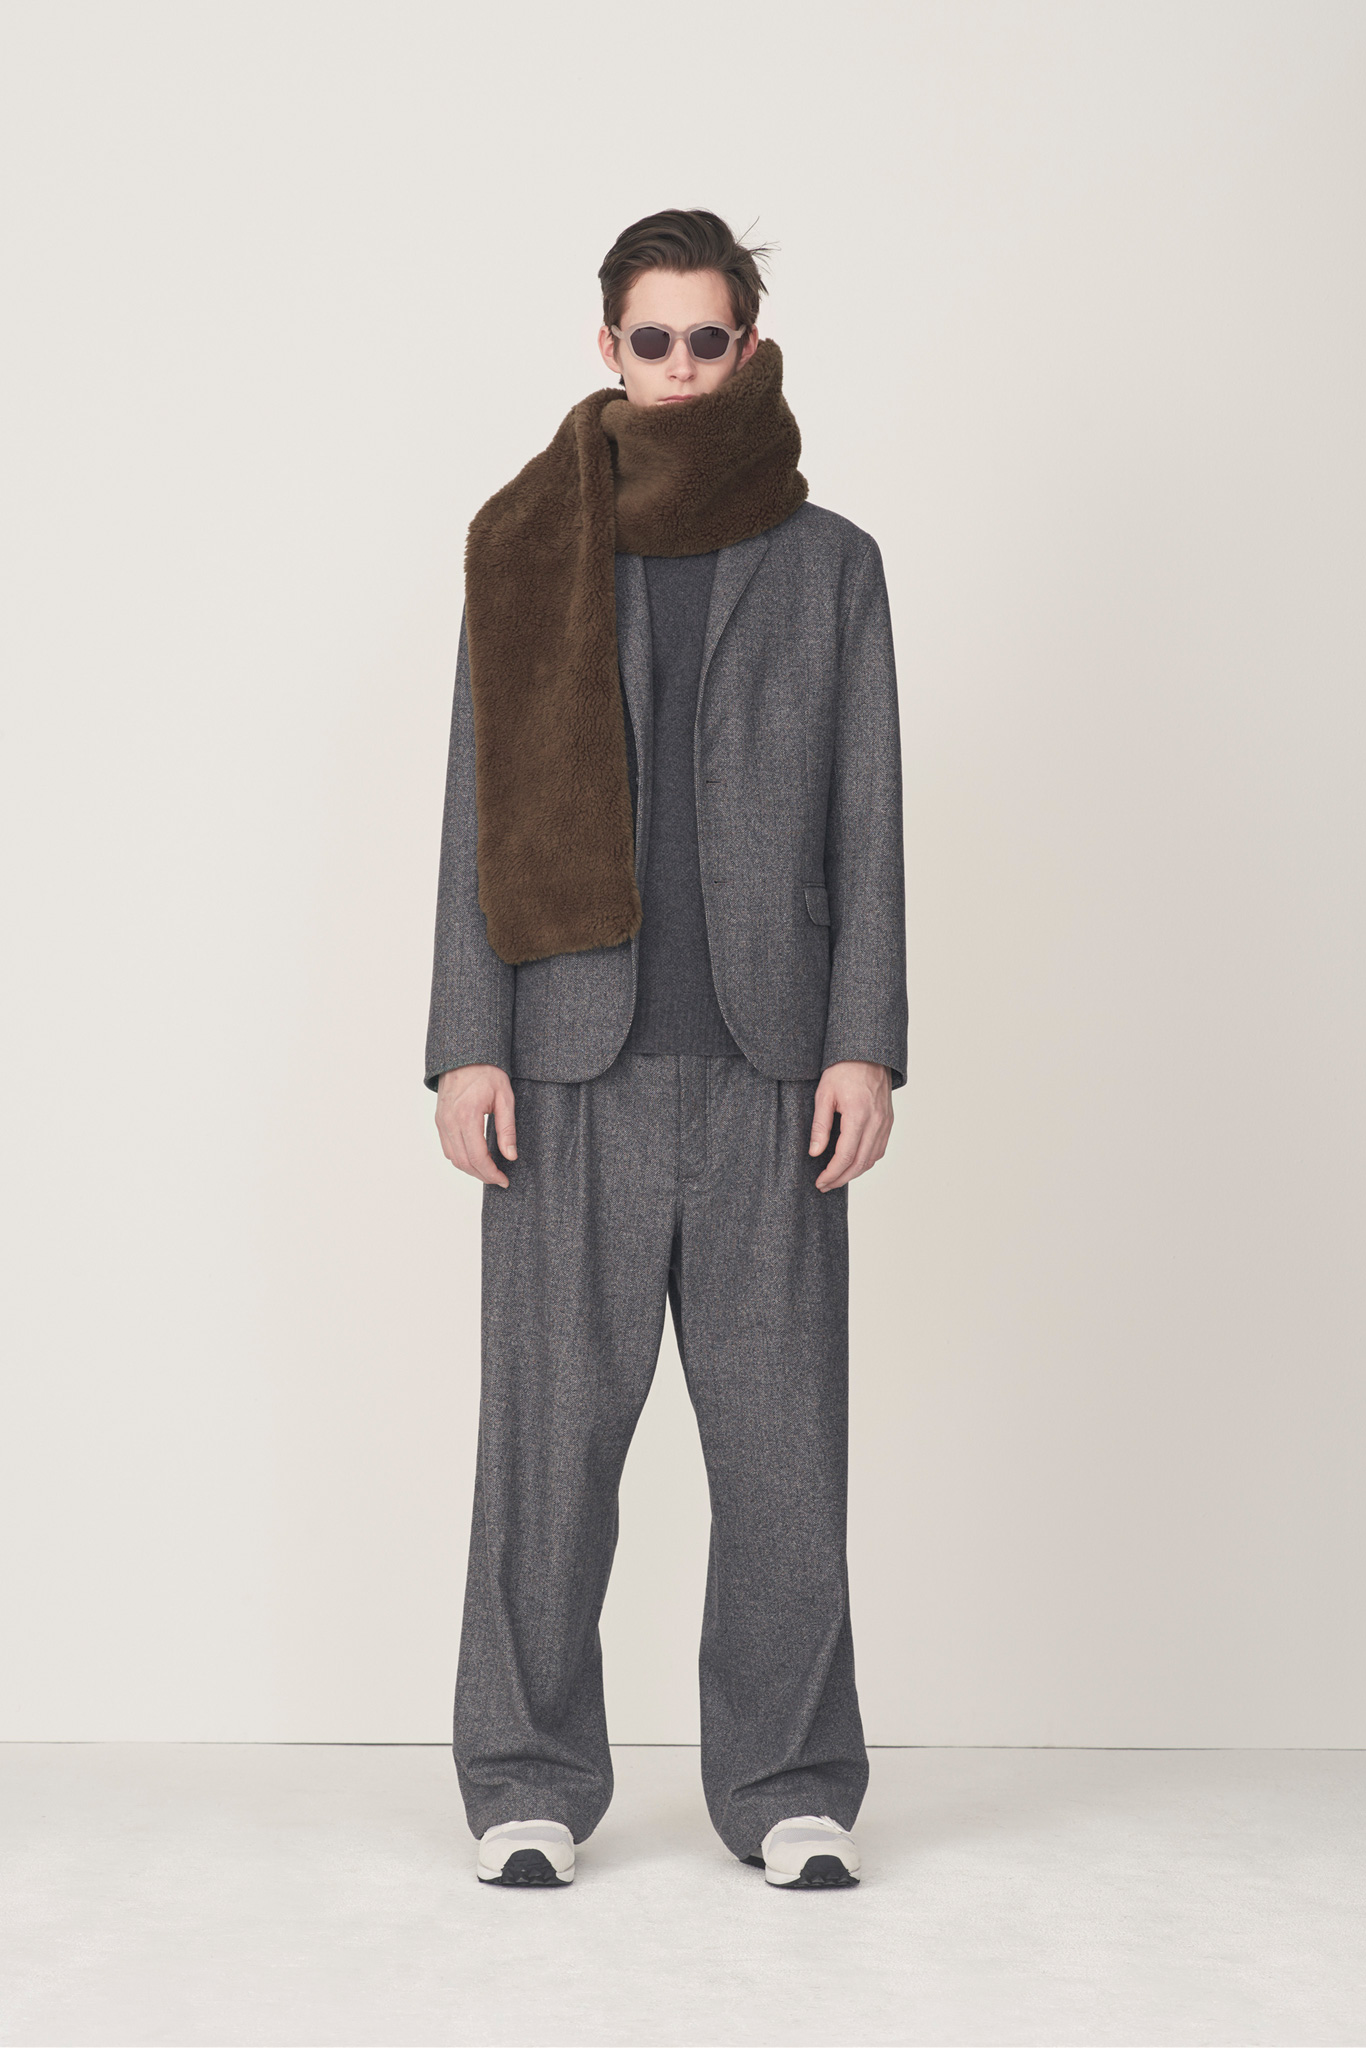 Steven Alan Men's Fall/Winter 2015 Lookbook - Fashionably Male